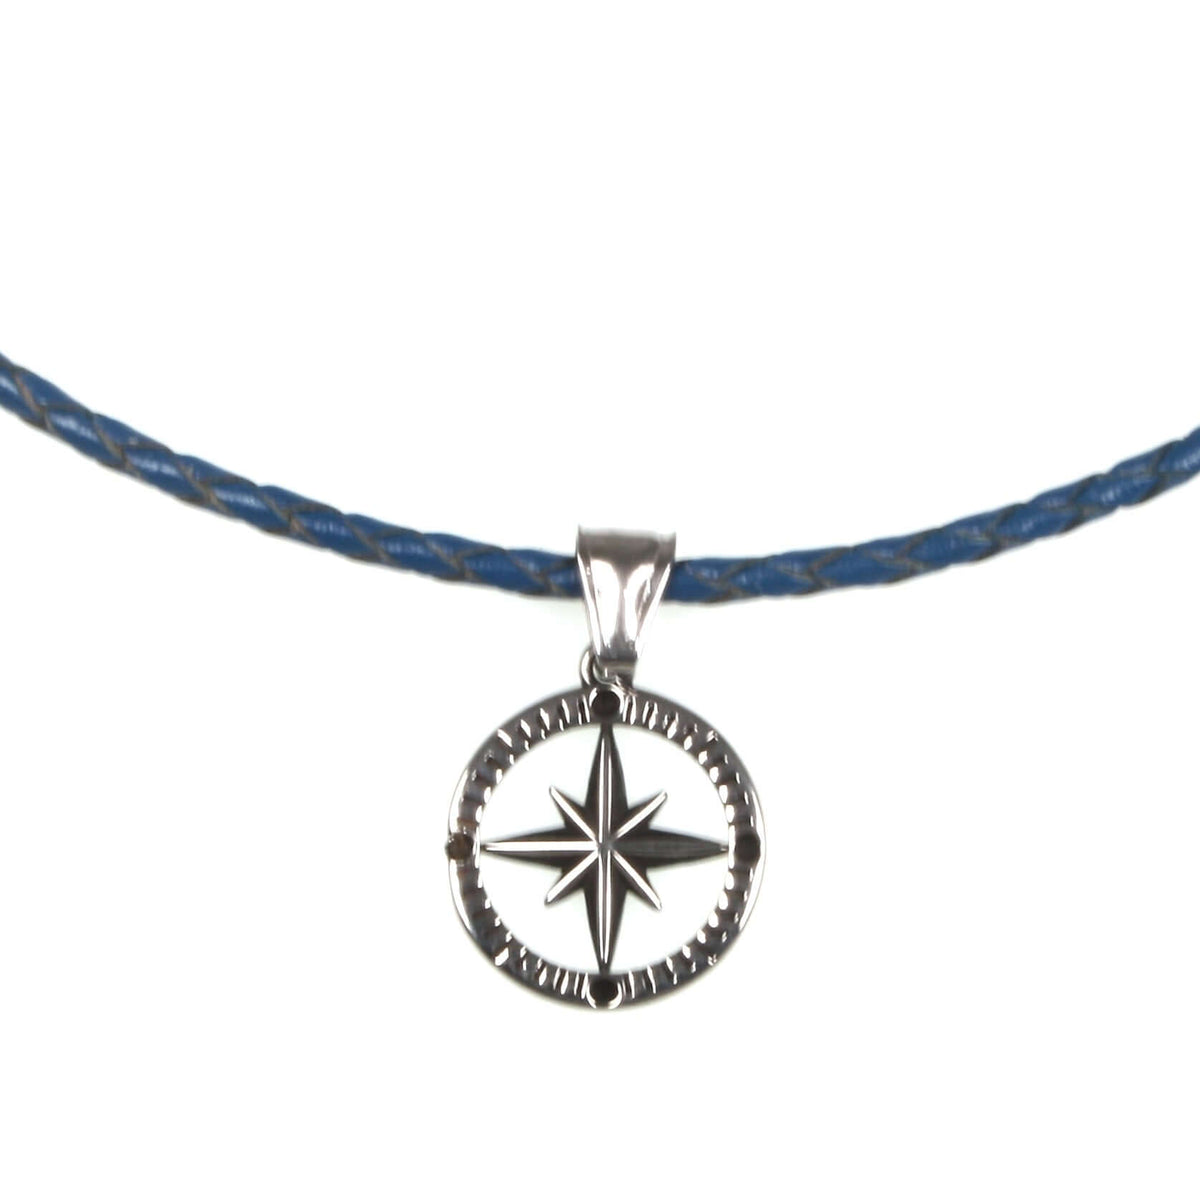 Herren-leder-halskette-damen-kompass-windrose-blau-geflochten-Edelstahlverschluss-anhaenger-wavepirate-shop-f